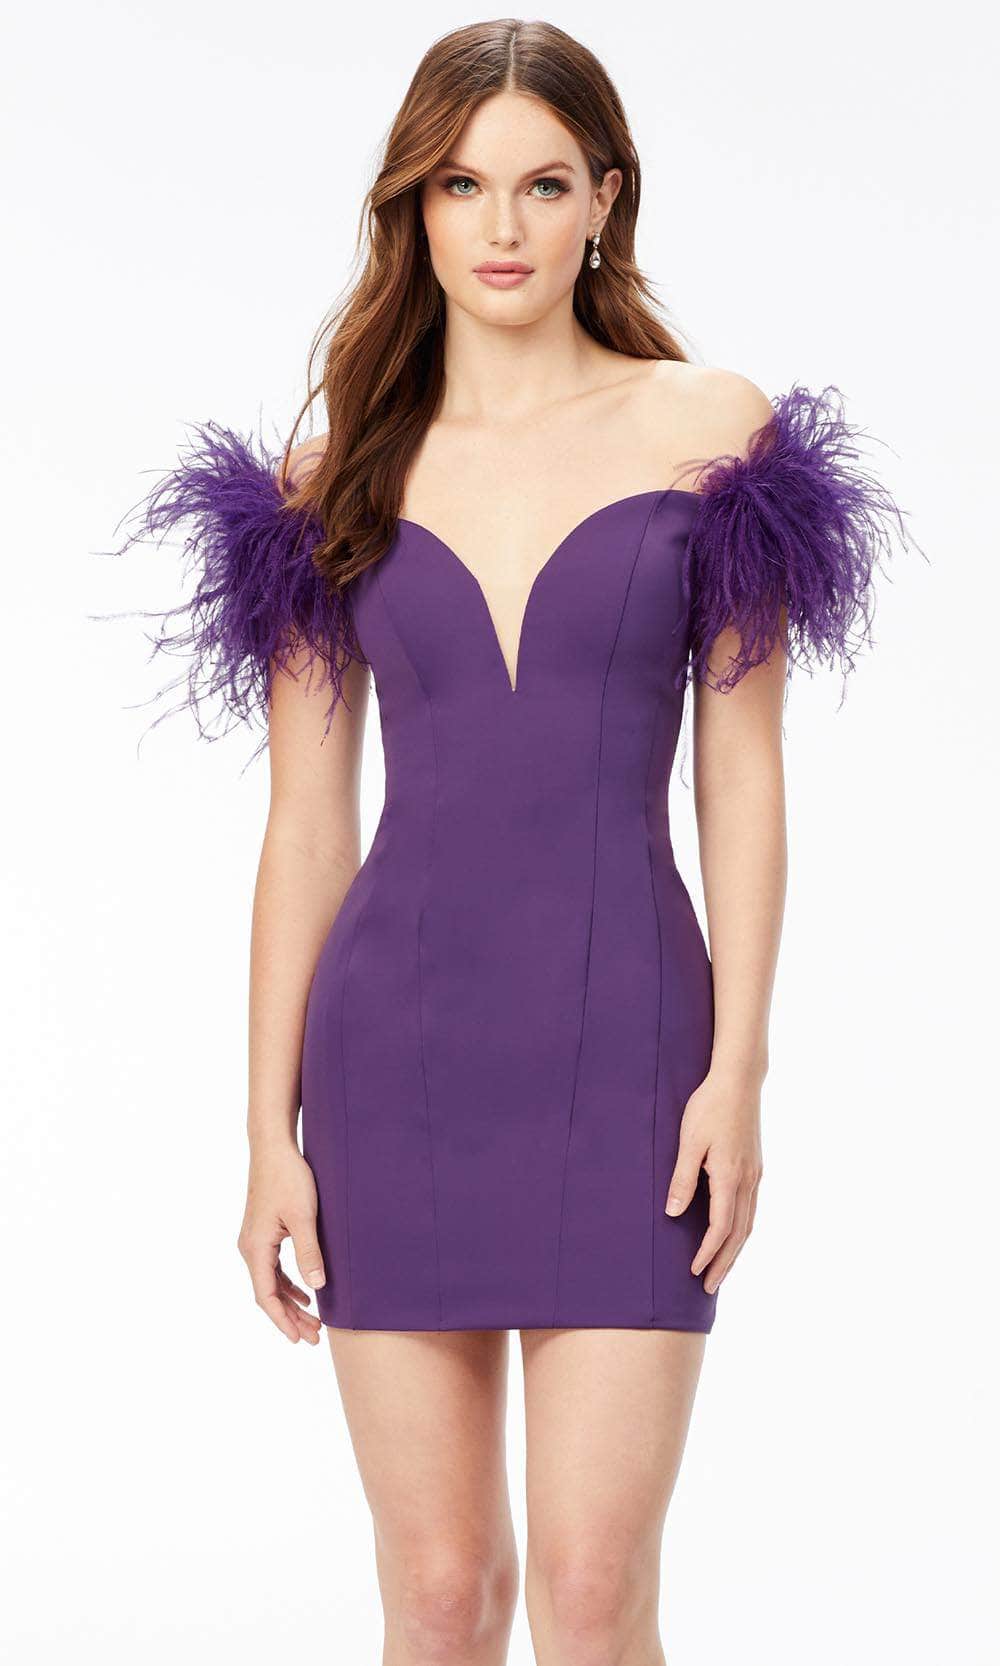 Ashley Lauren 4523 - Off-Shoulder Feathered Cocktail Dress
